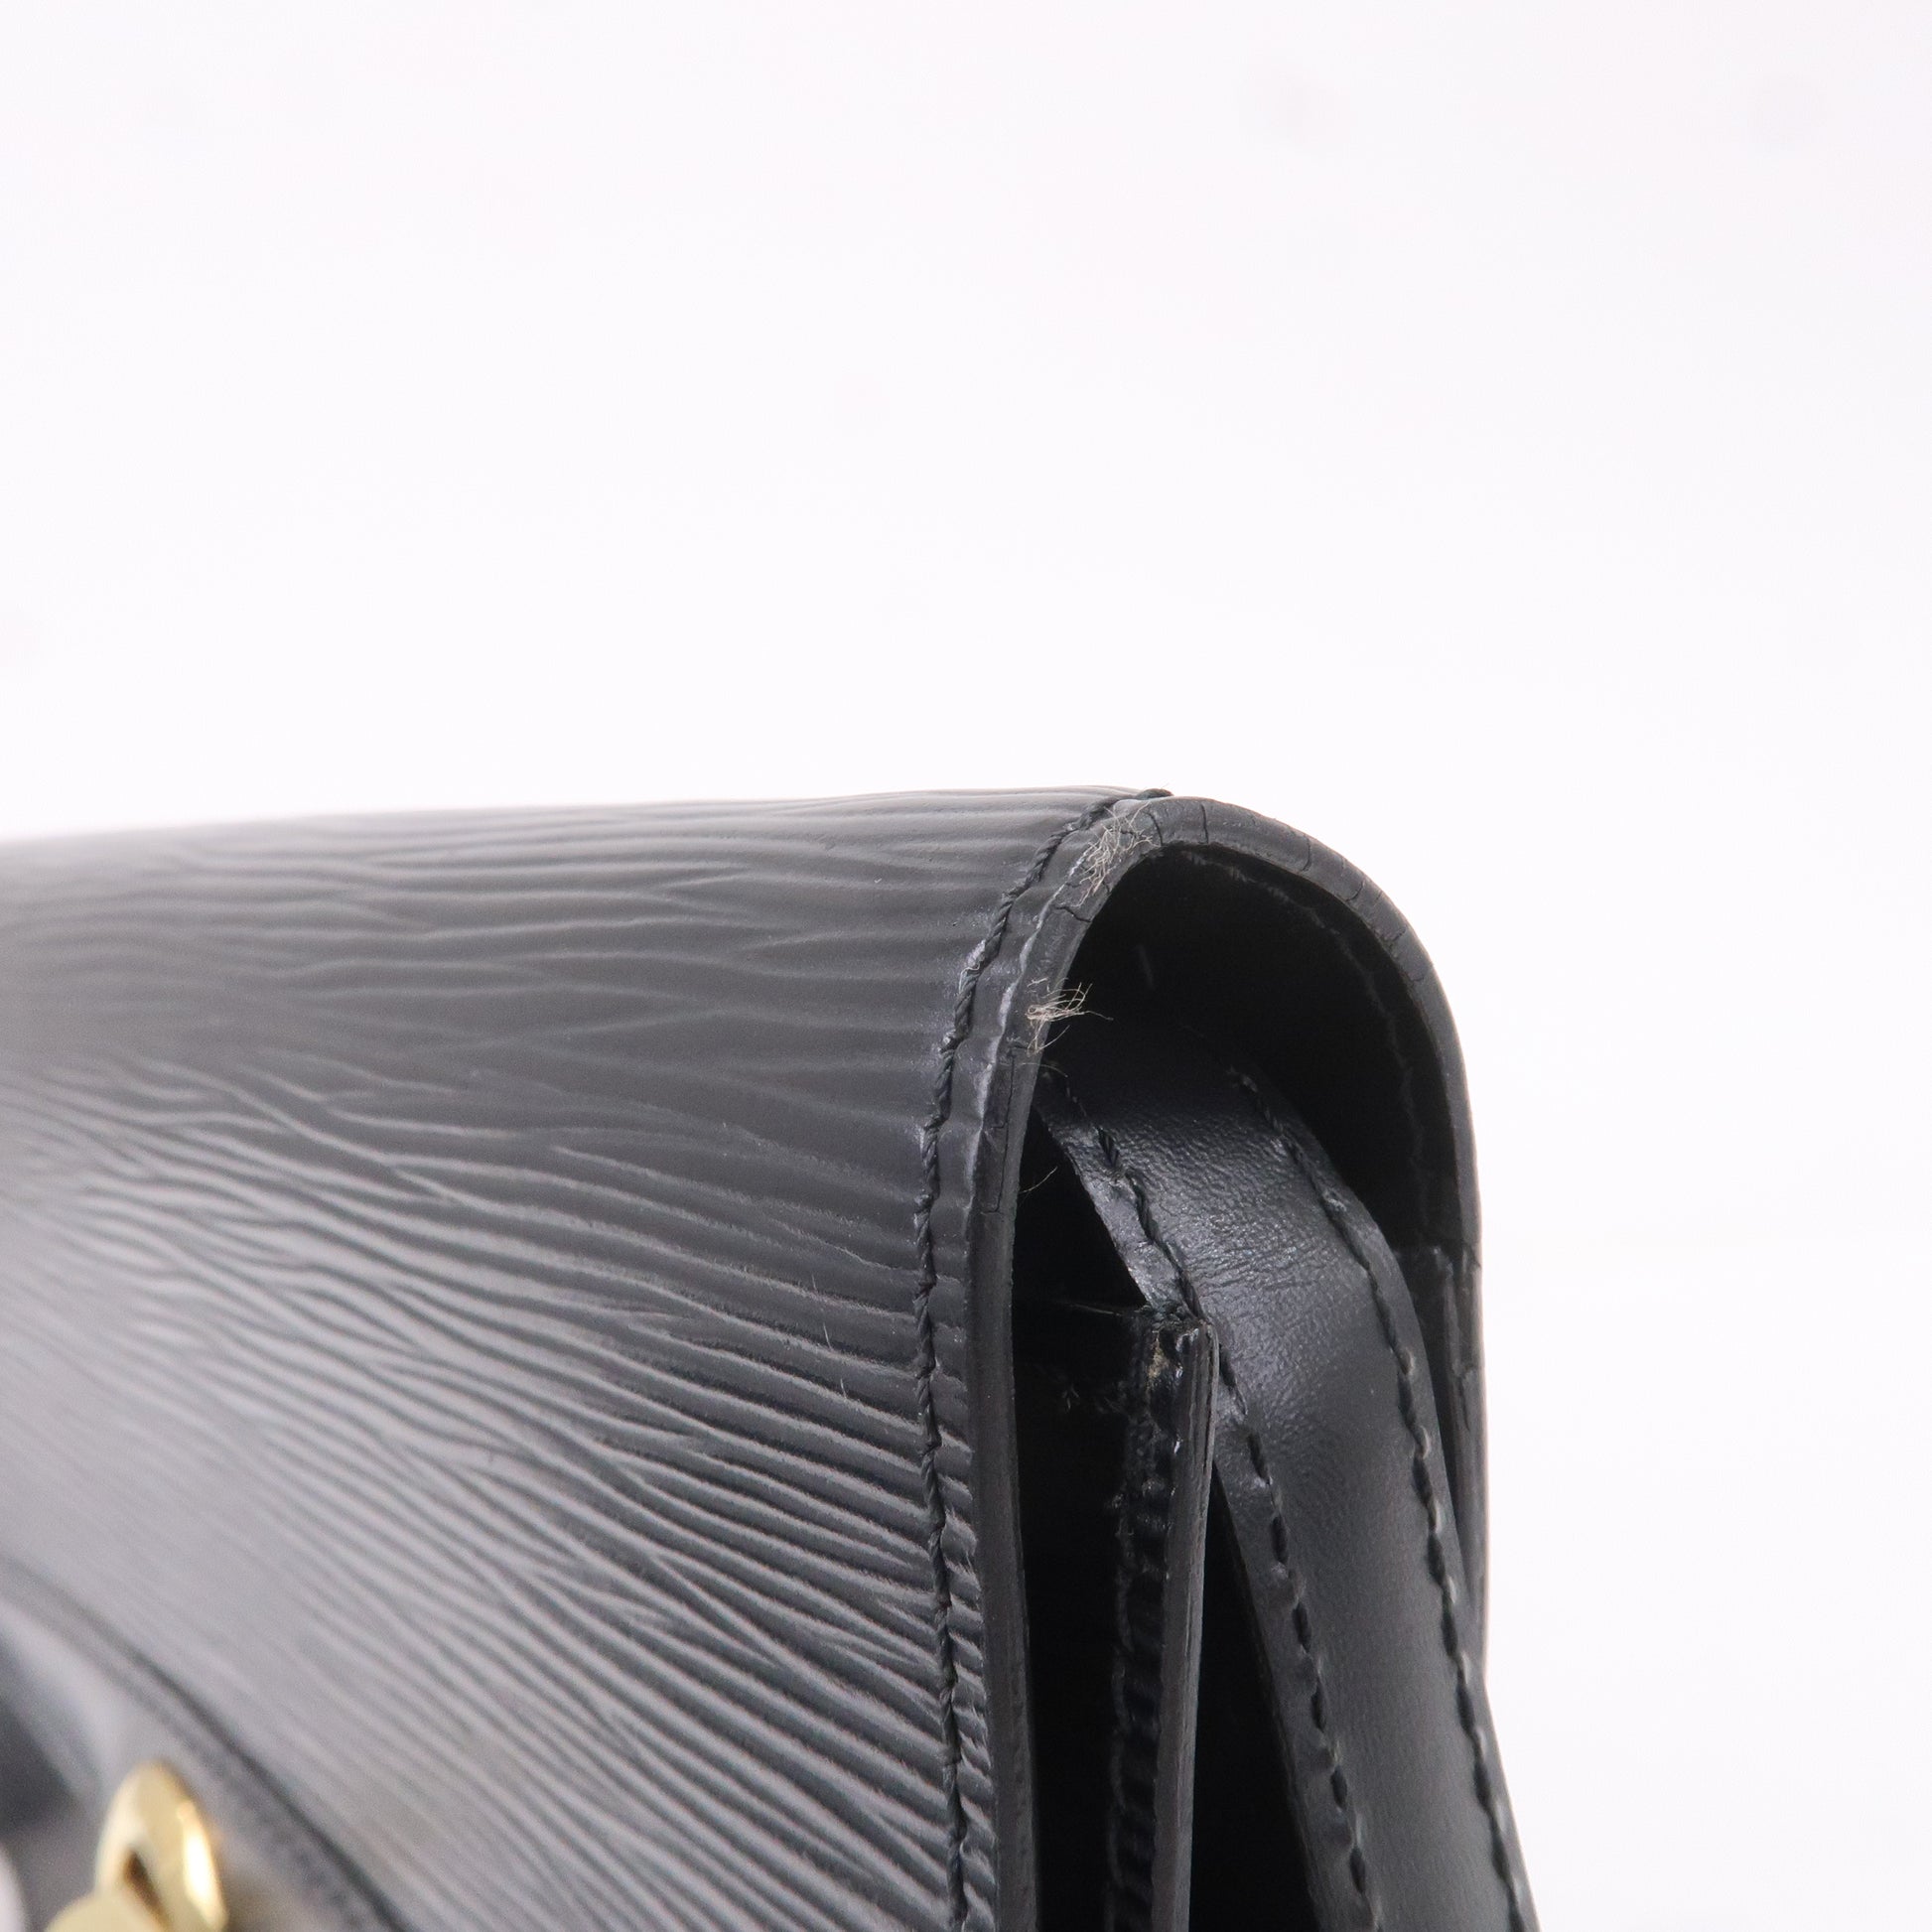 Louis Vuitton Black Epi Leather Clutch